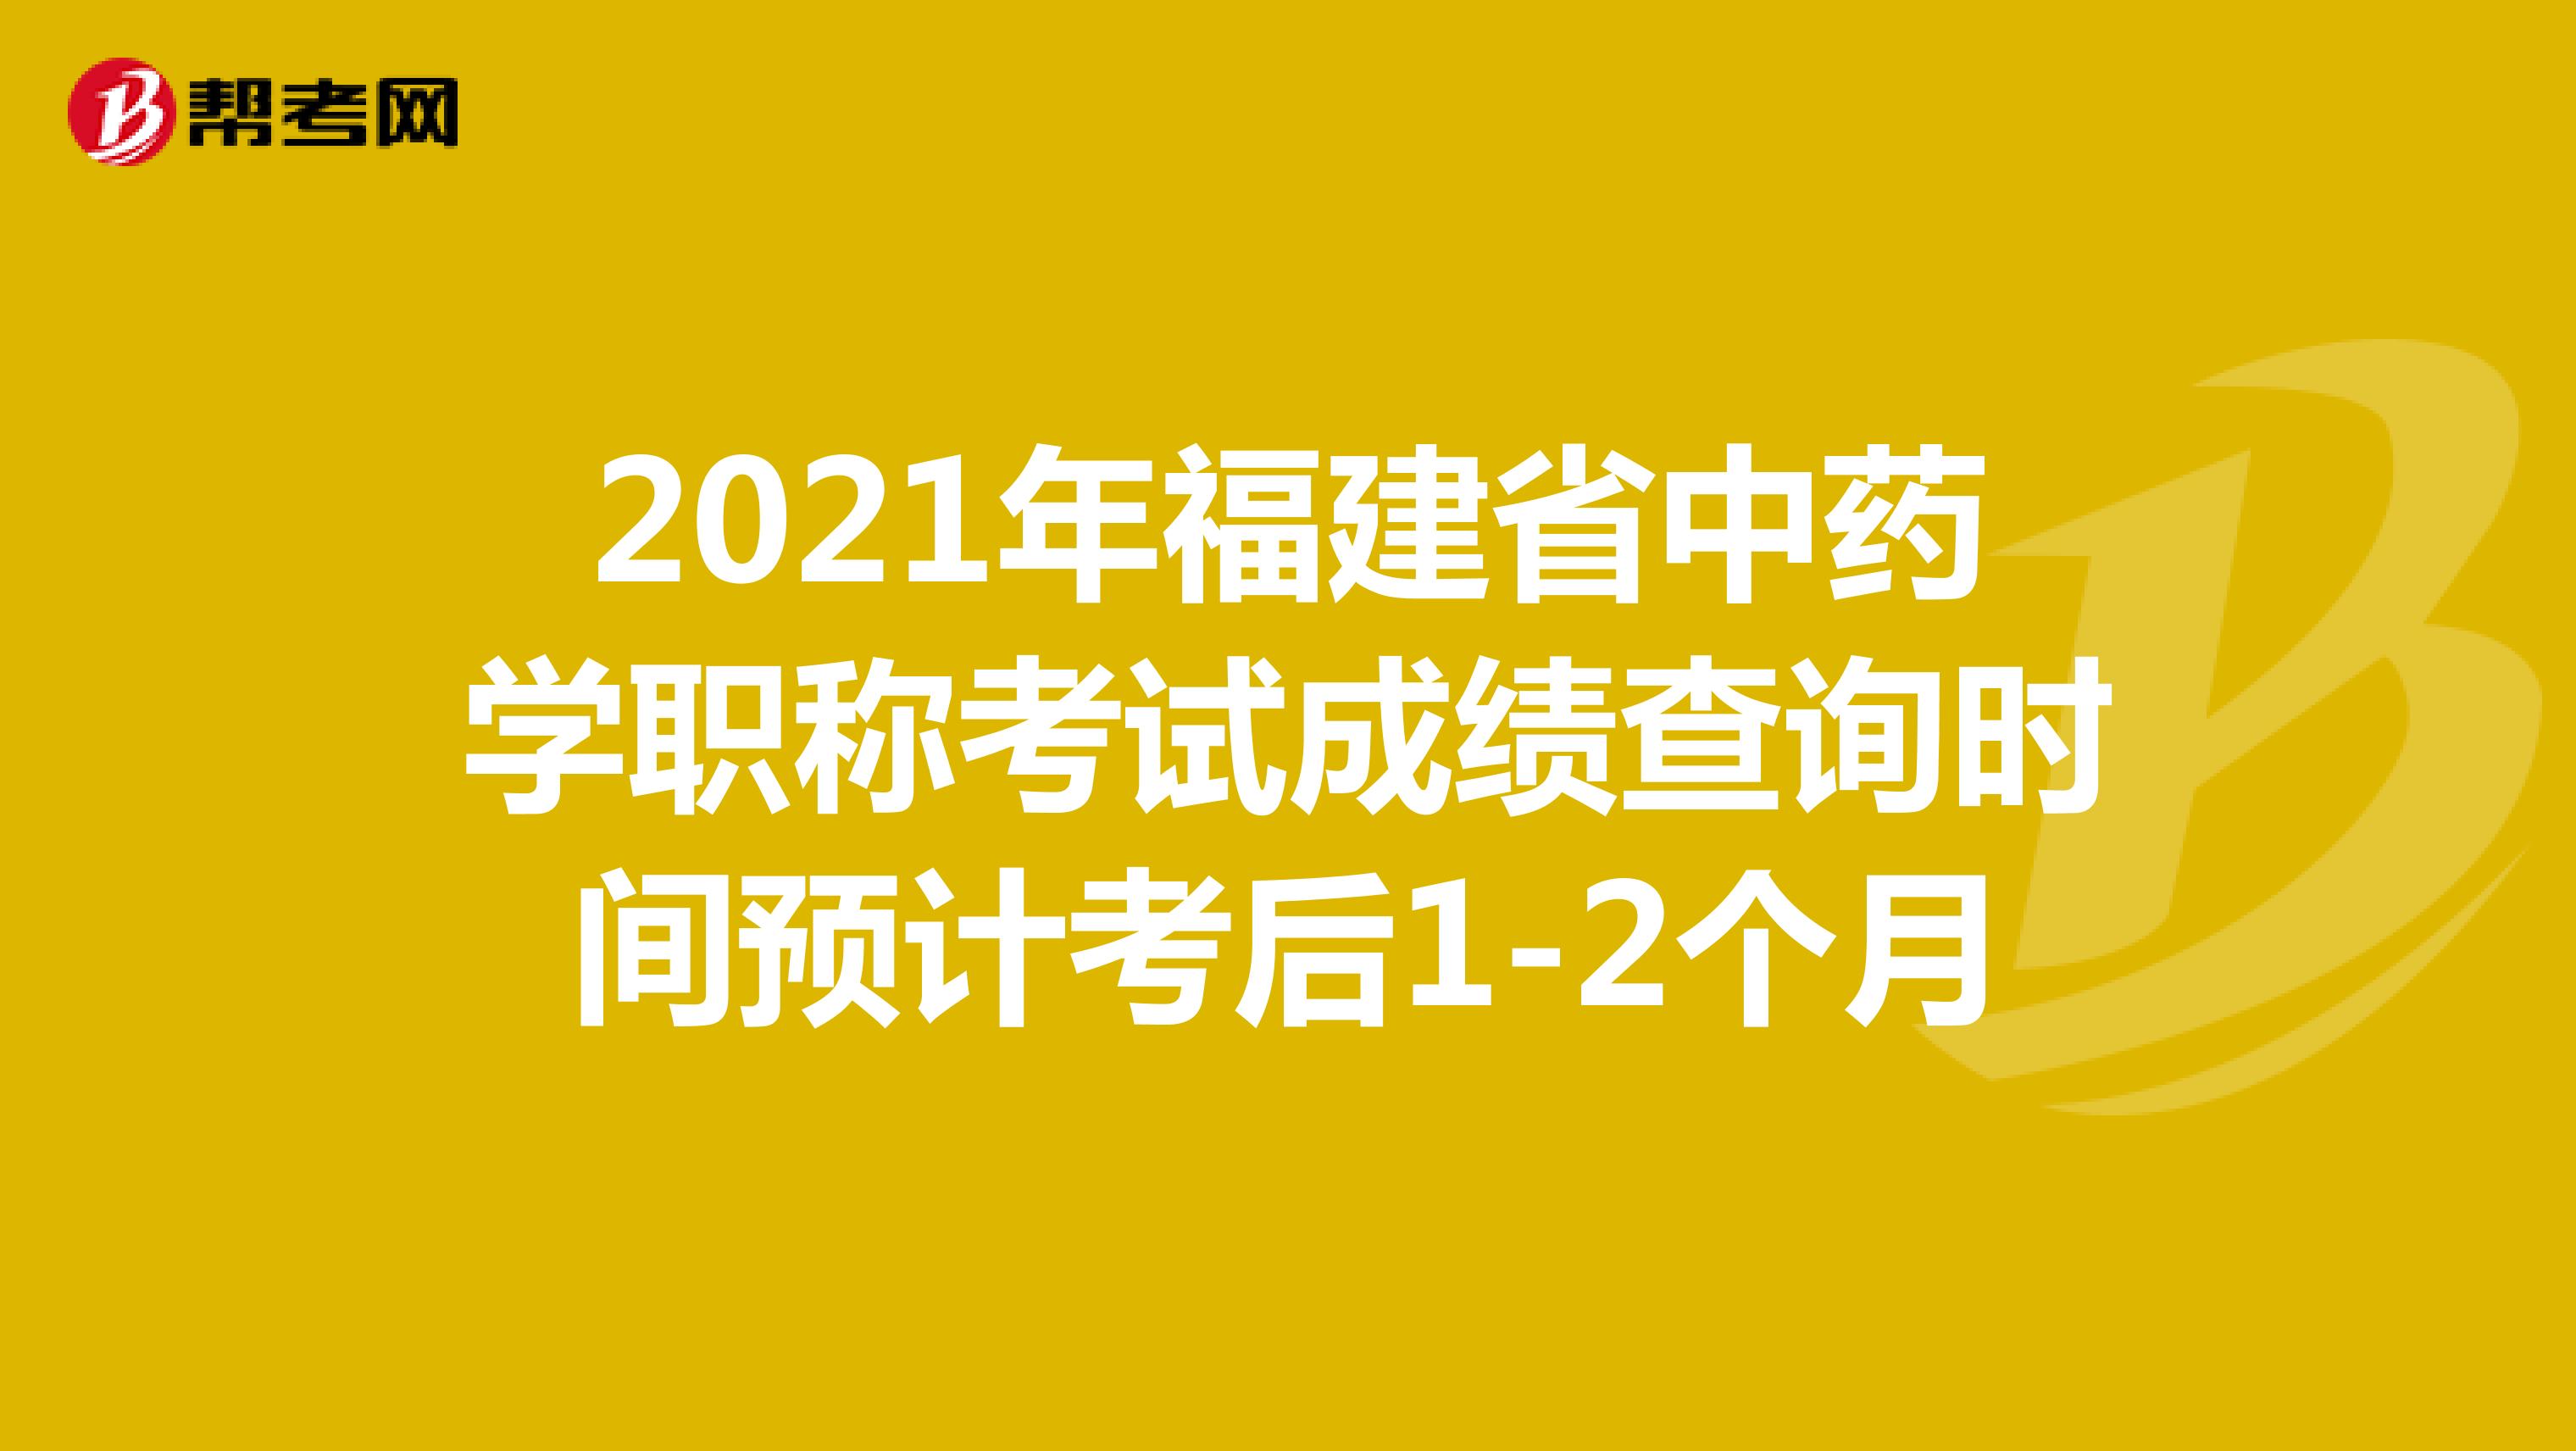 2021年福建省中药学职称考试成绩查询时间预计考后1-2个月